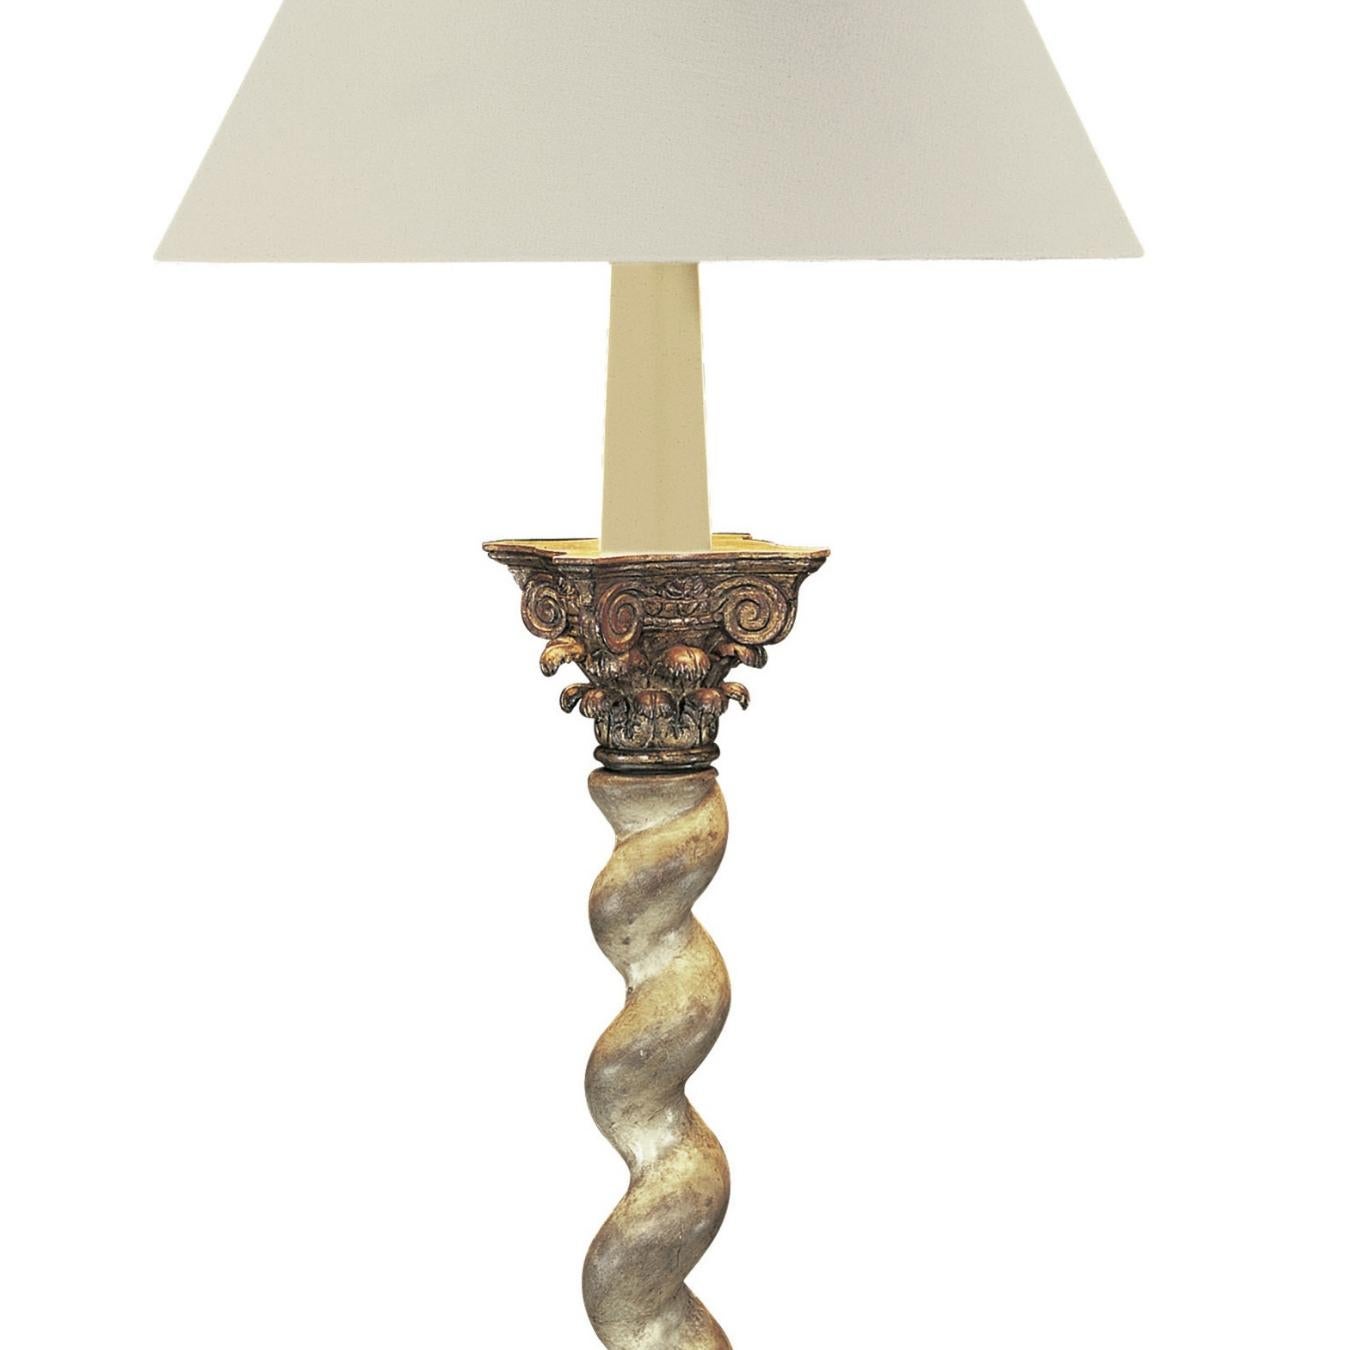 Bois Lampe Salomonic Twist inspire par des colonnes avec tige torsade et chapiteau corinthien en vente